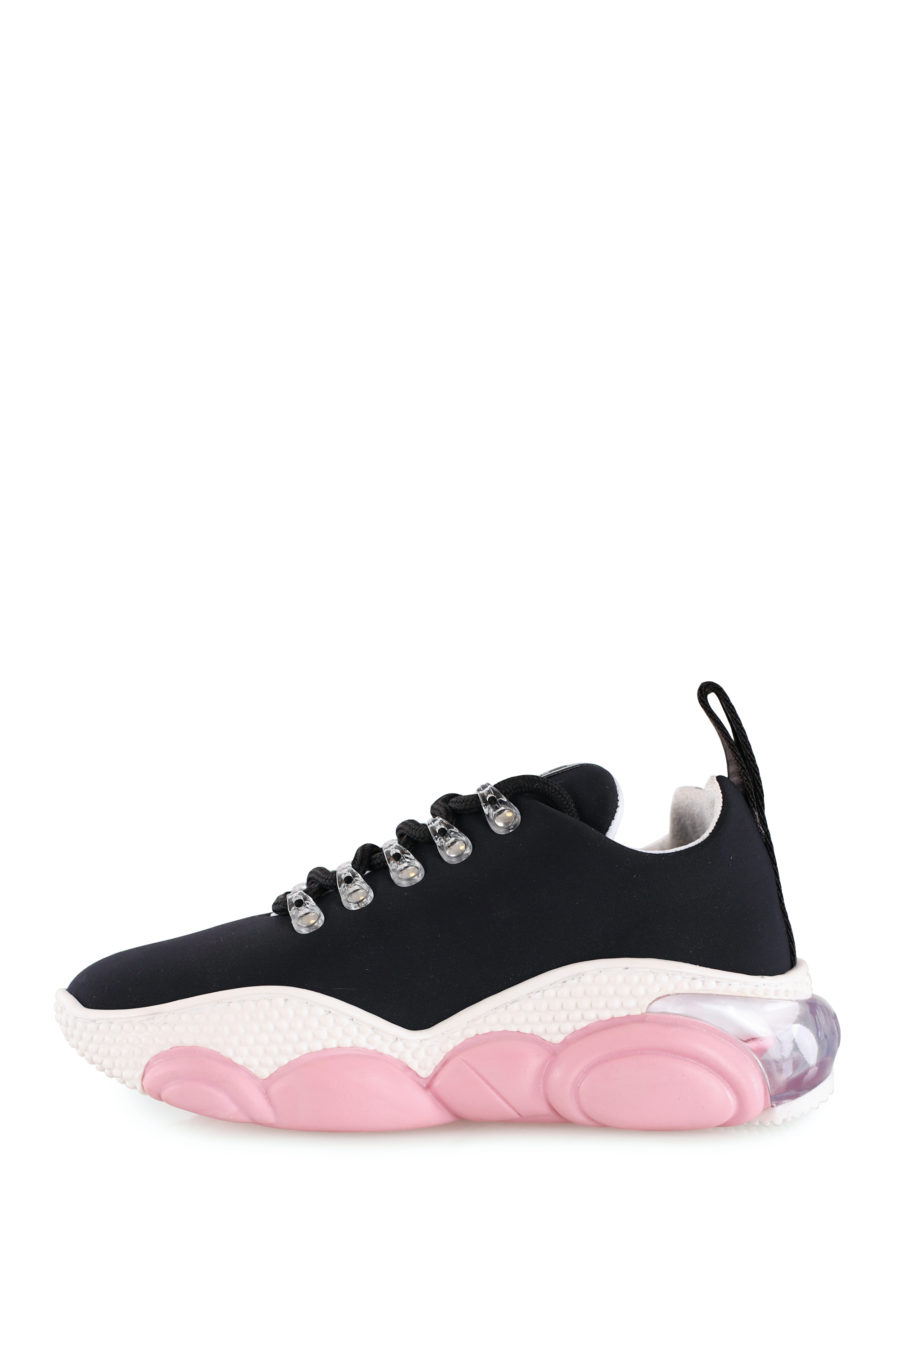 Zapatillas negras con suela color rosa - IMG 8136 copia